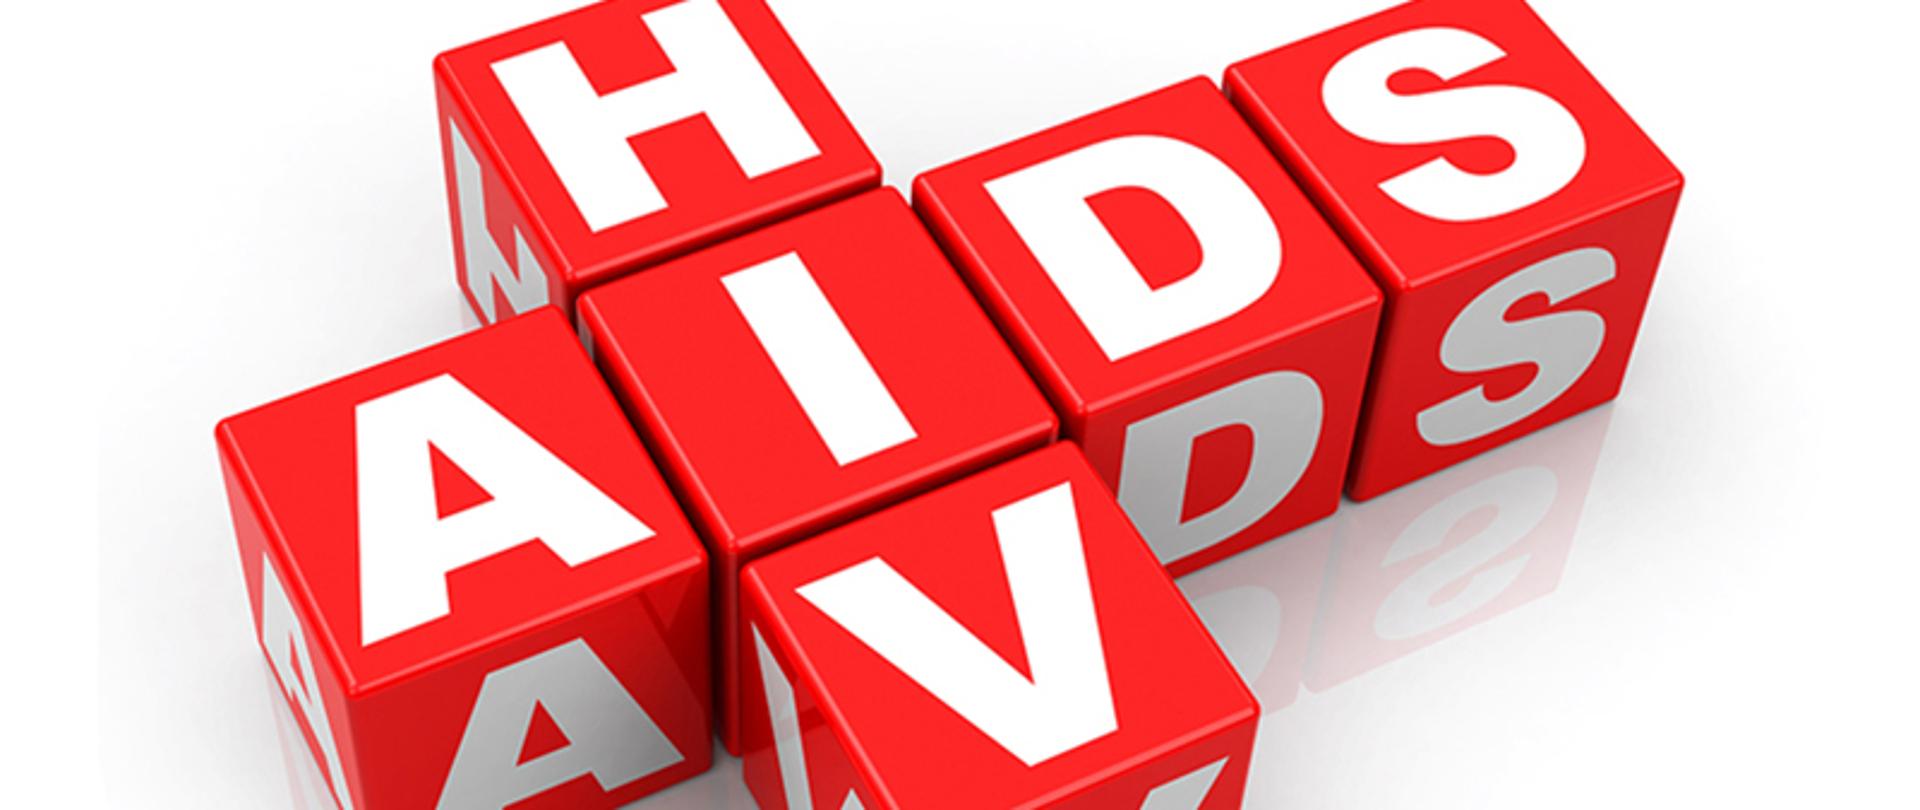 Zdjęcie przedstawia biały napis 'HIV/AIDS', umieszczony na czerwonych kostkach (sześcianach) na białym tle.